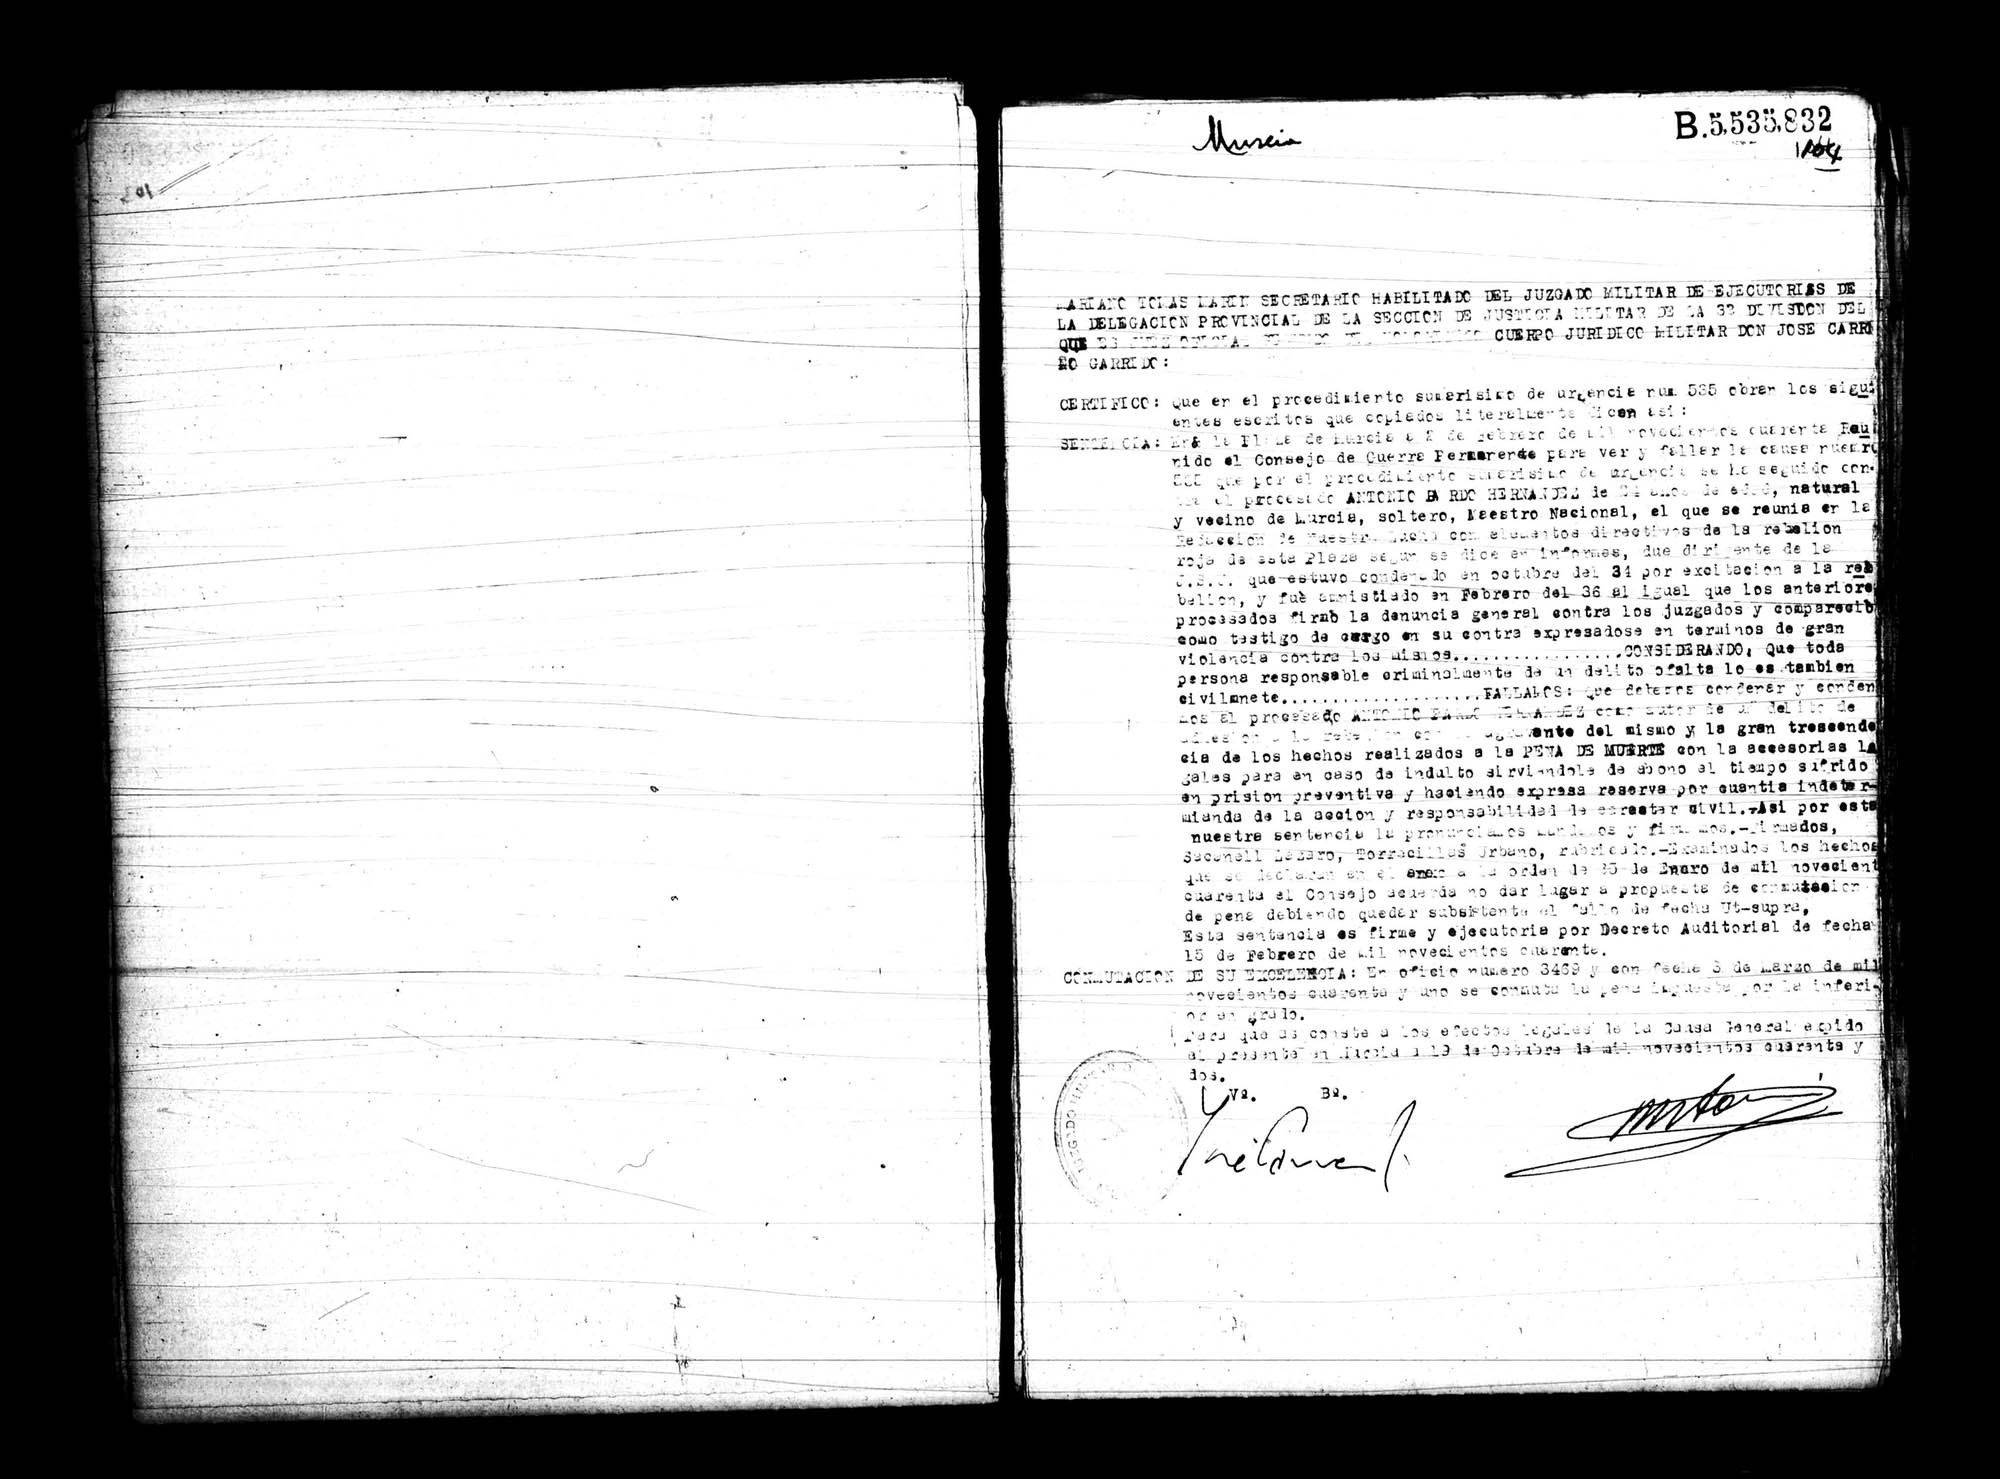 Certificado de la sentencia pronunciada contra Antonio Bardo Hernández, causa 535, el 2 de febrero de 1940 en Murcia.